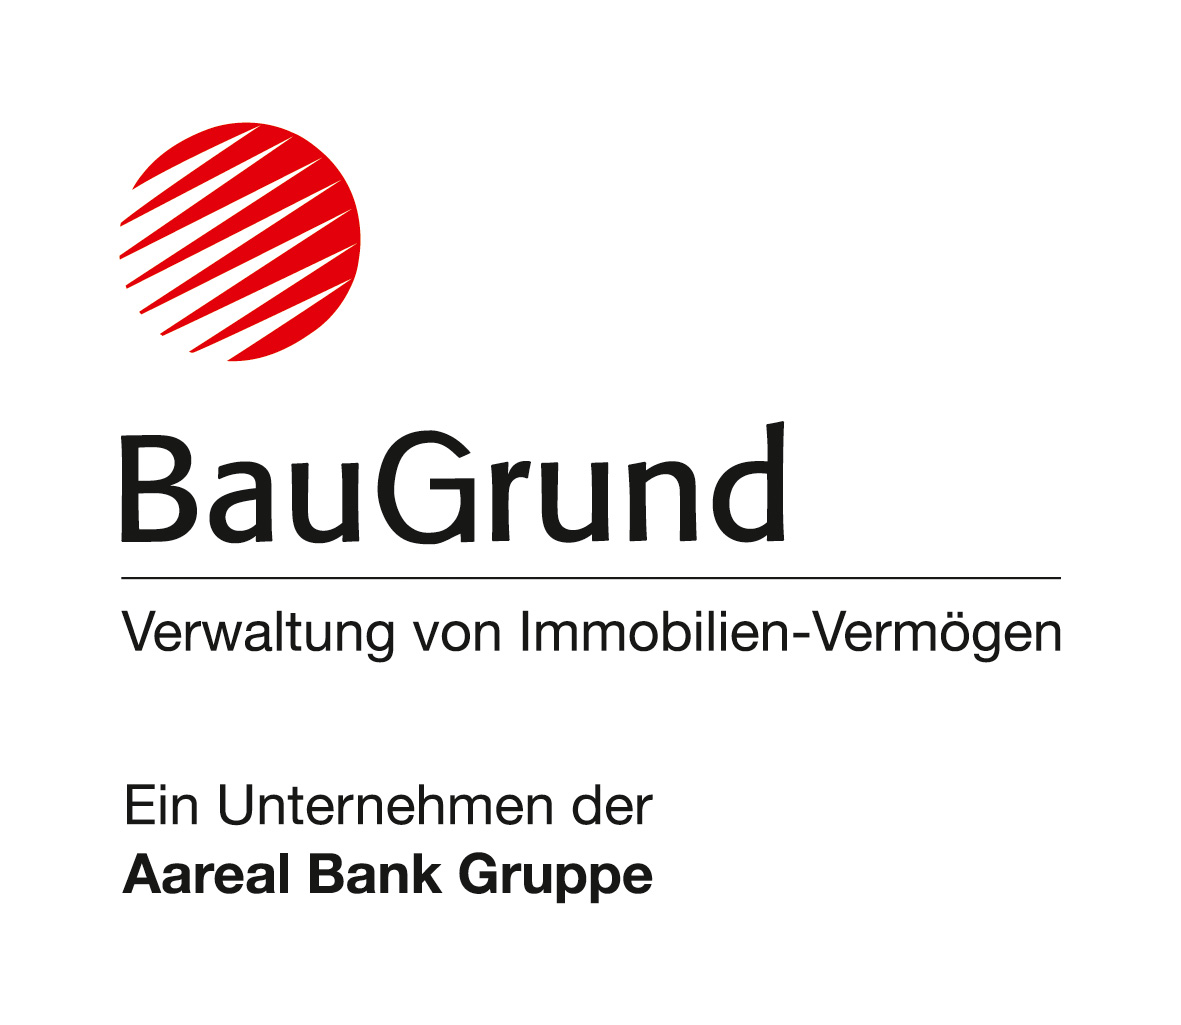 Bild 7 BauGrund Immobilien-Management GmbH in Düsseldorf